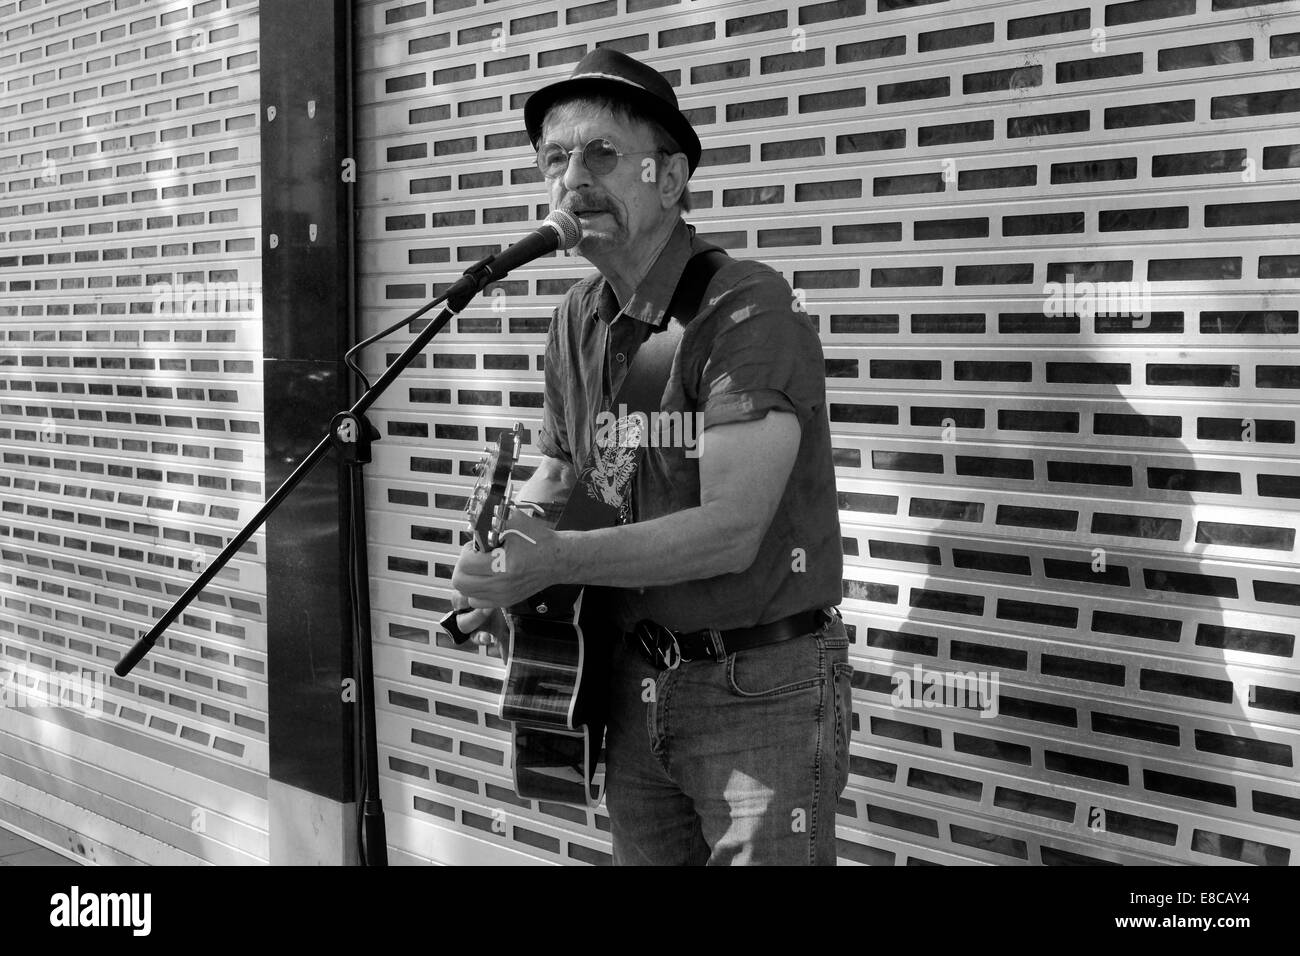 Mâle mature musicien ambulant avec guitare chanter dans un centre-ville angleterre uk Banque D'Images